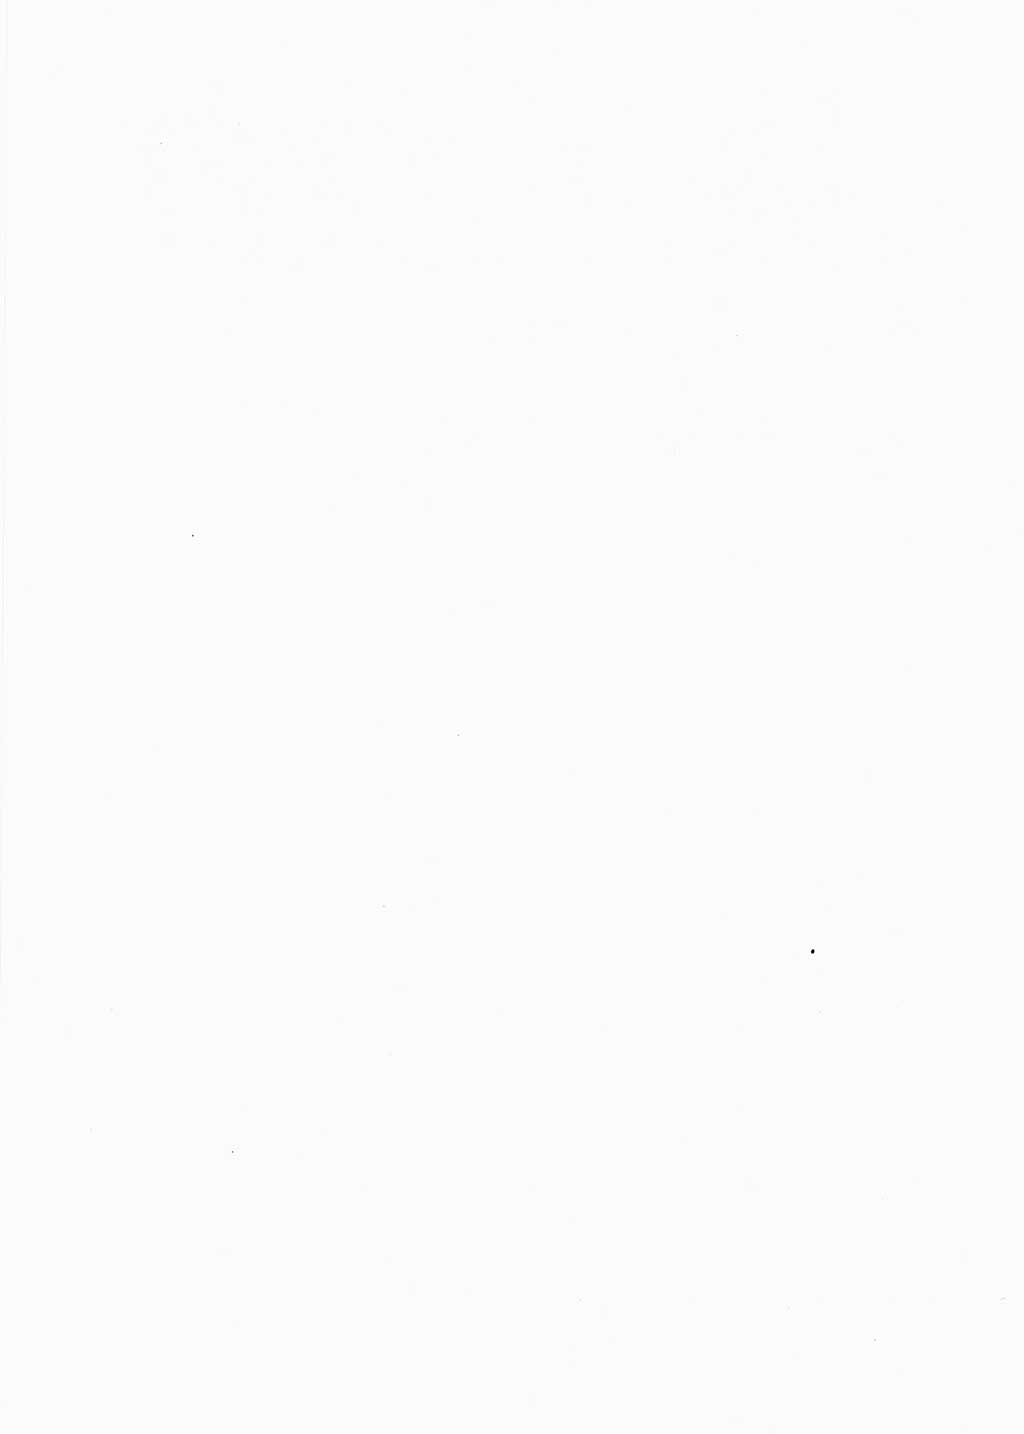 Handbuch für Betriebsangehörige, Abteilung Strafvollzug (SV) [Ministerium des Innern (MdI) Deutsche Demokratische Republik (DDR)] 1981, Seite 2 (Hb. BA Abt. SV MdI DDR 1981, S. 2)